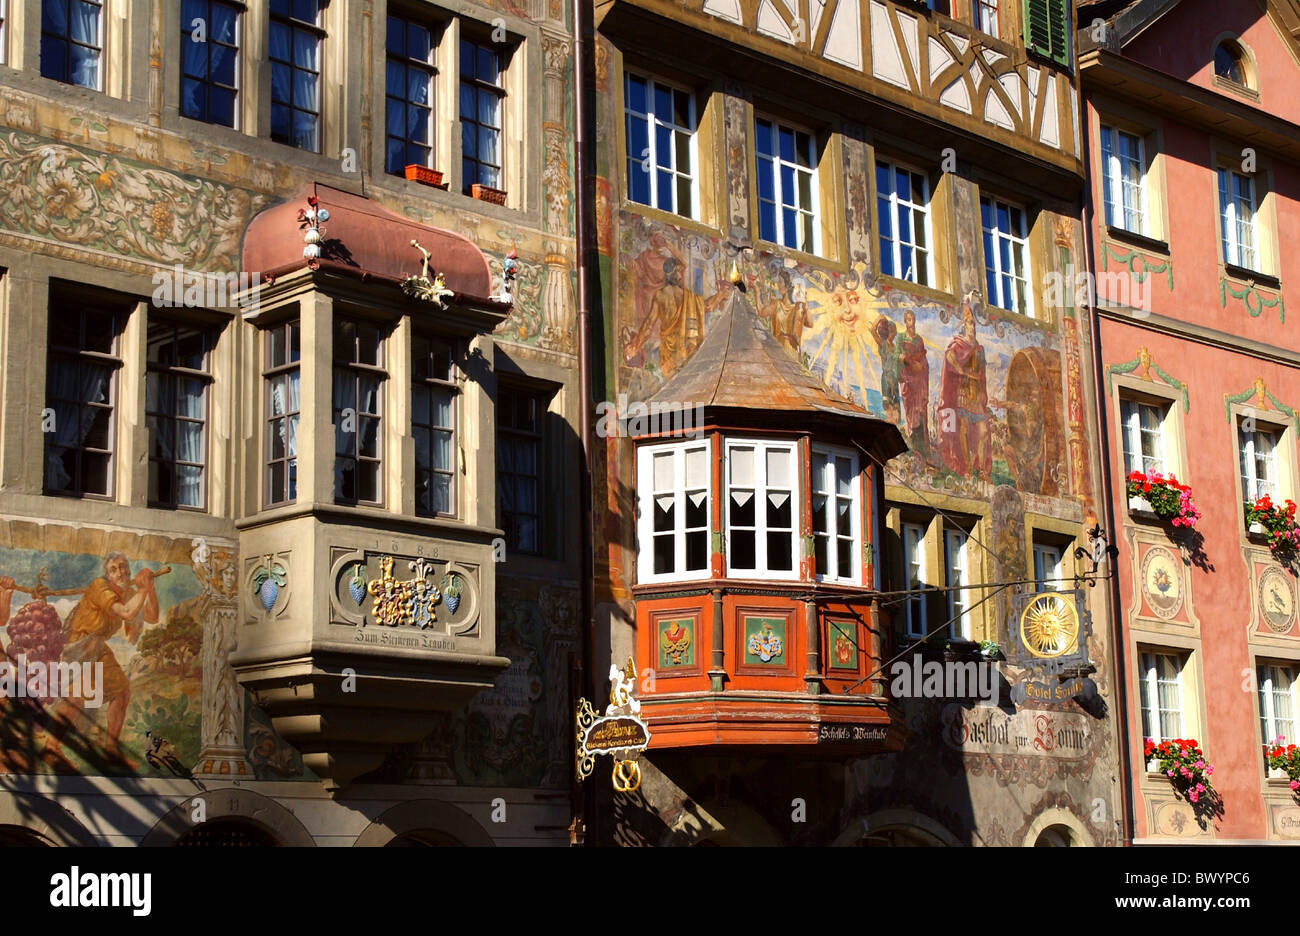 Architektur Erker Kanton Schaffhausen Detail Fassaden historische Häuser  beherbergt alte Stadt Malerei Farbe Stockfotografie - Alamy